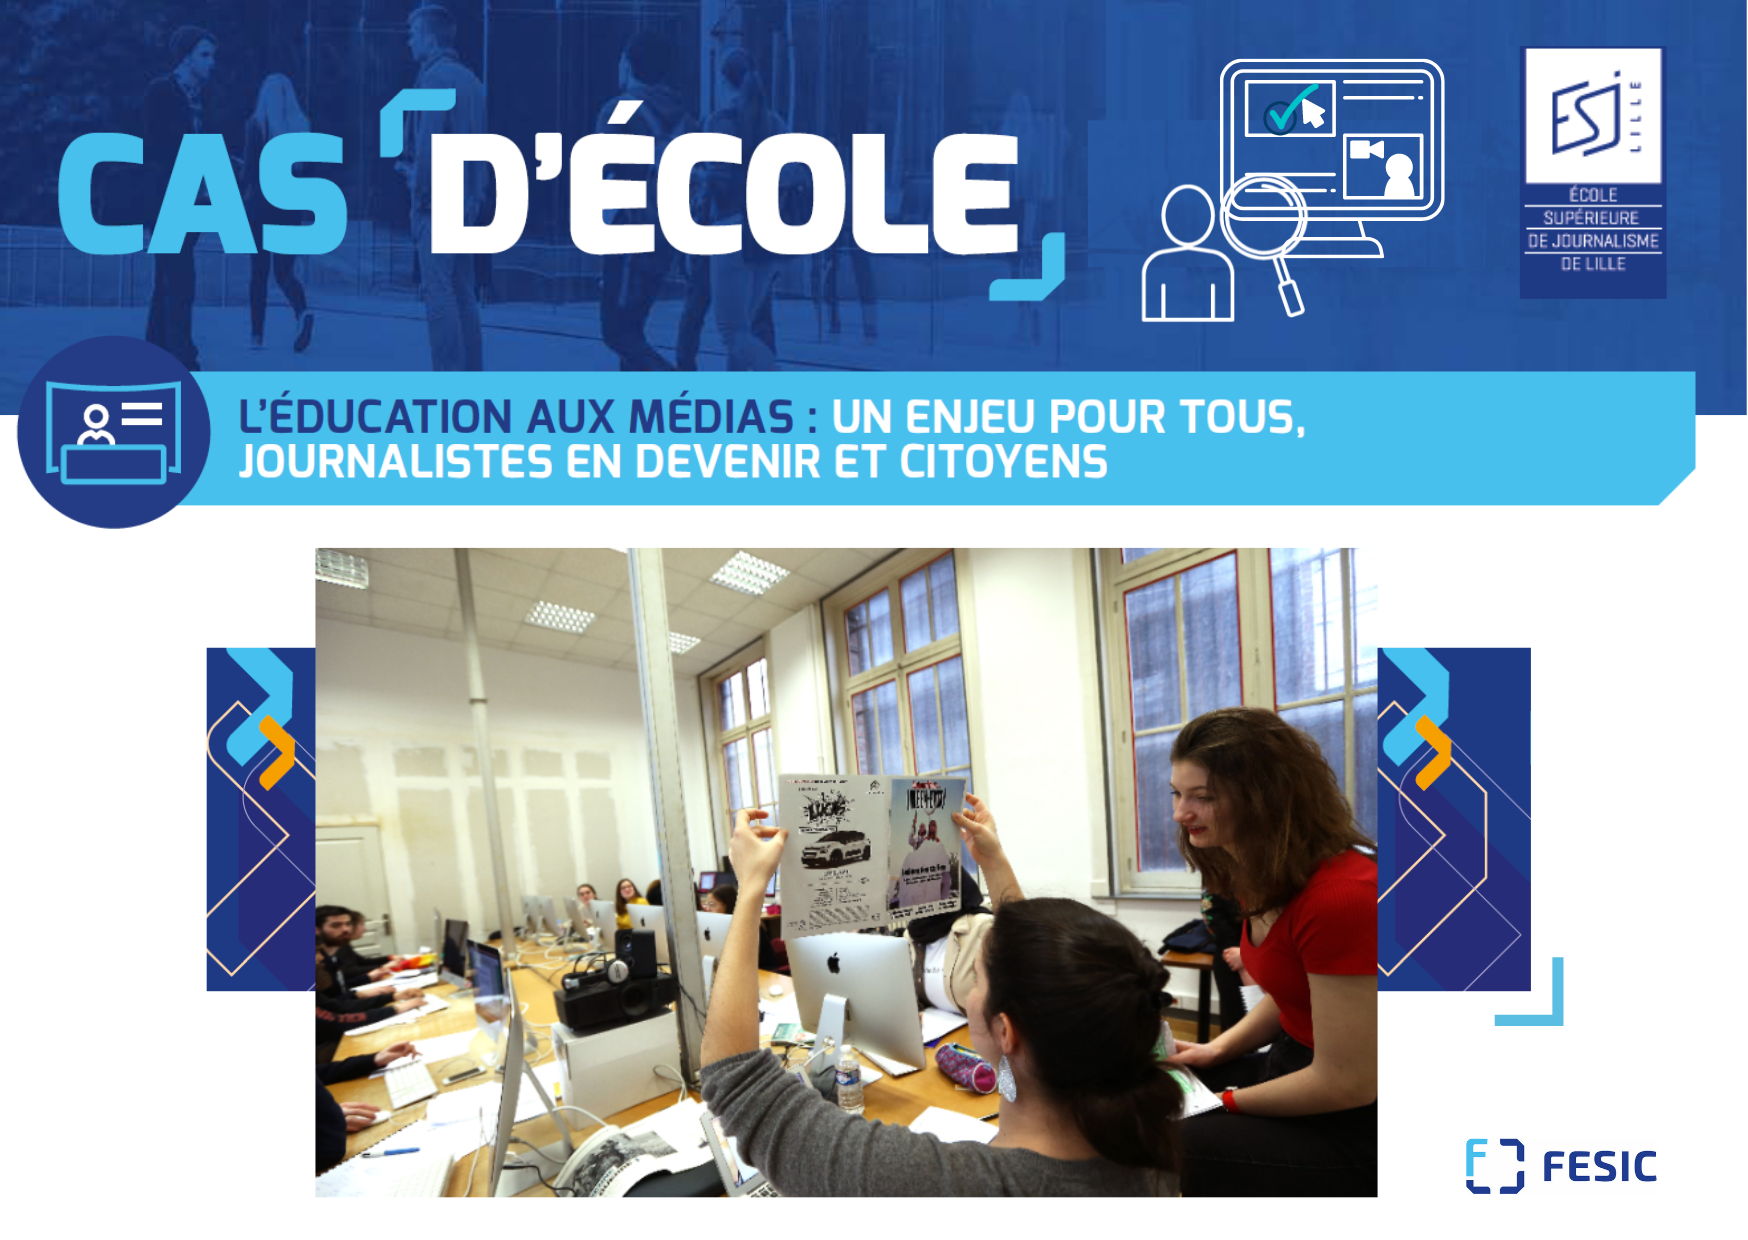 Les [cas d’école] FESIC : l’éducation aux médias comme enjeu démocratique par l’ESJ Lille